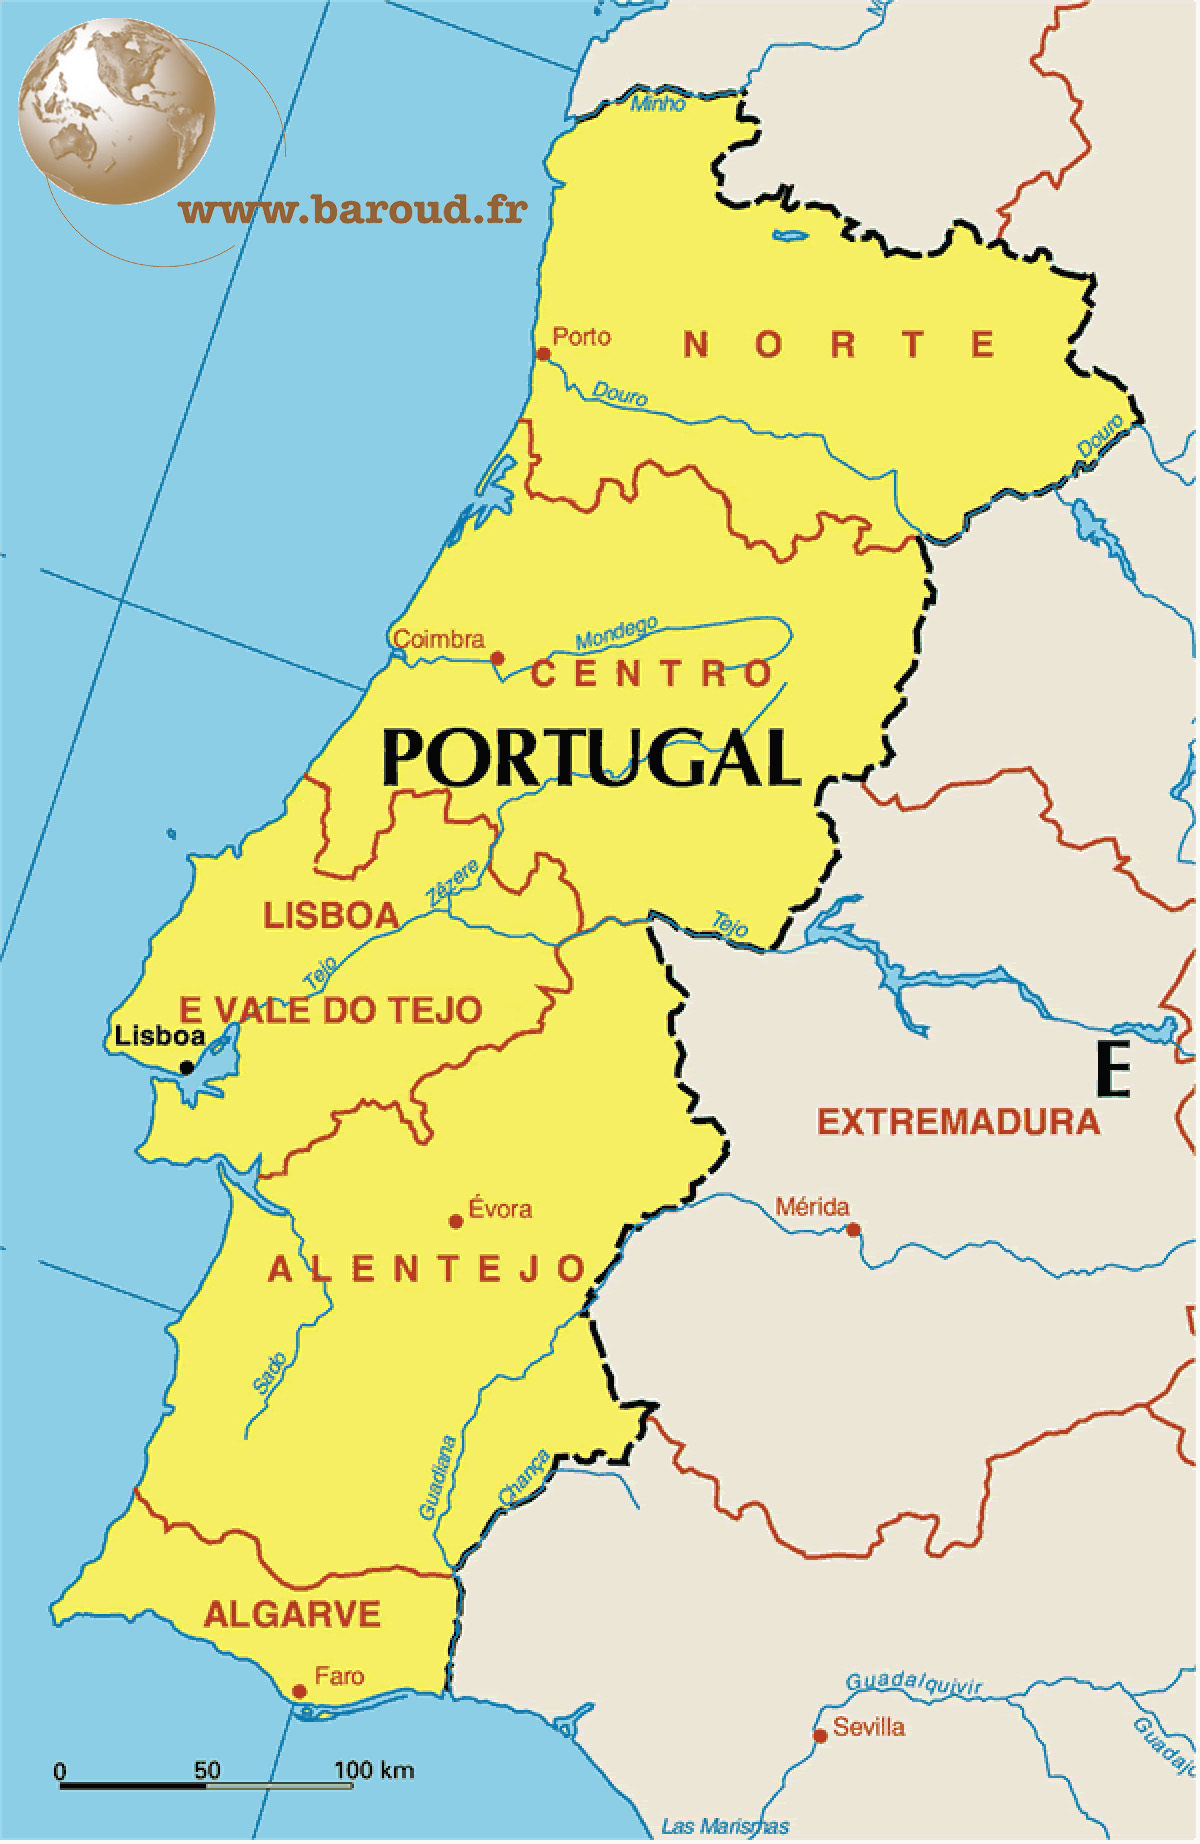 португалия на карте европы на русском языке